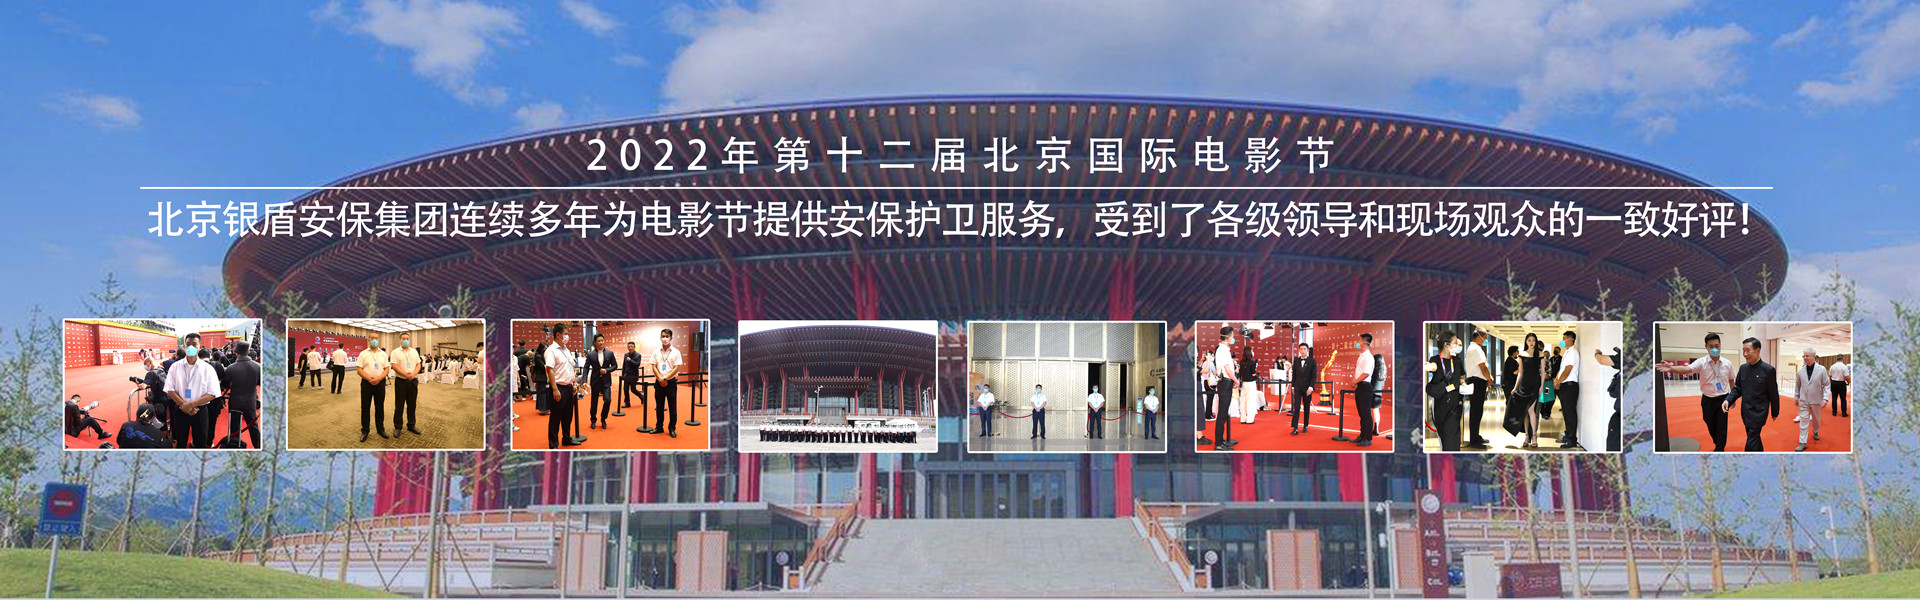 银盾北京保安服务有限公司为北京国际电影节提供保安服务